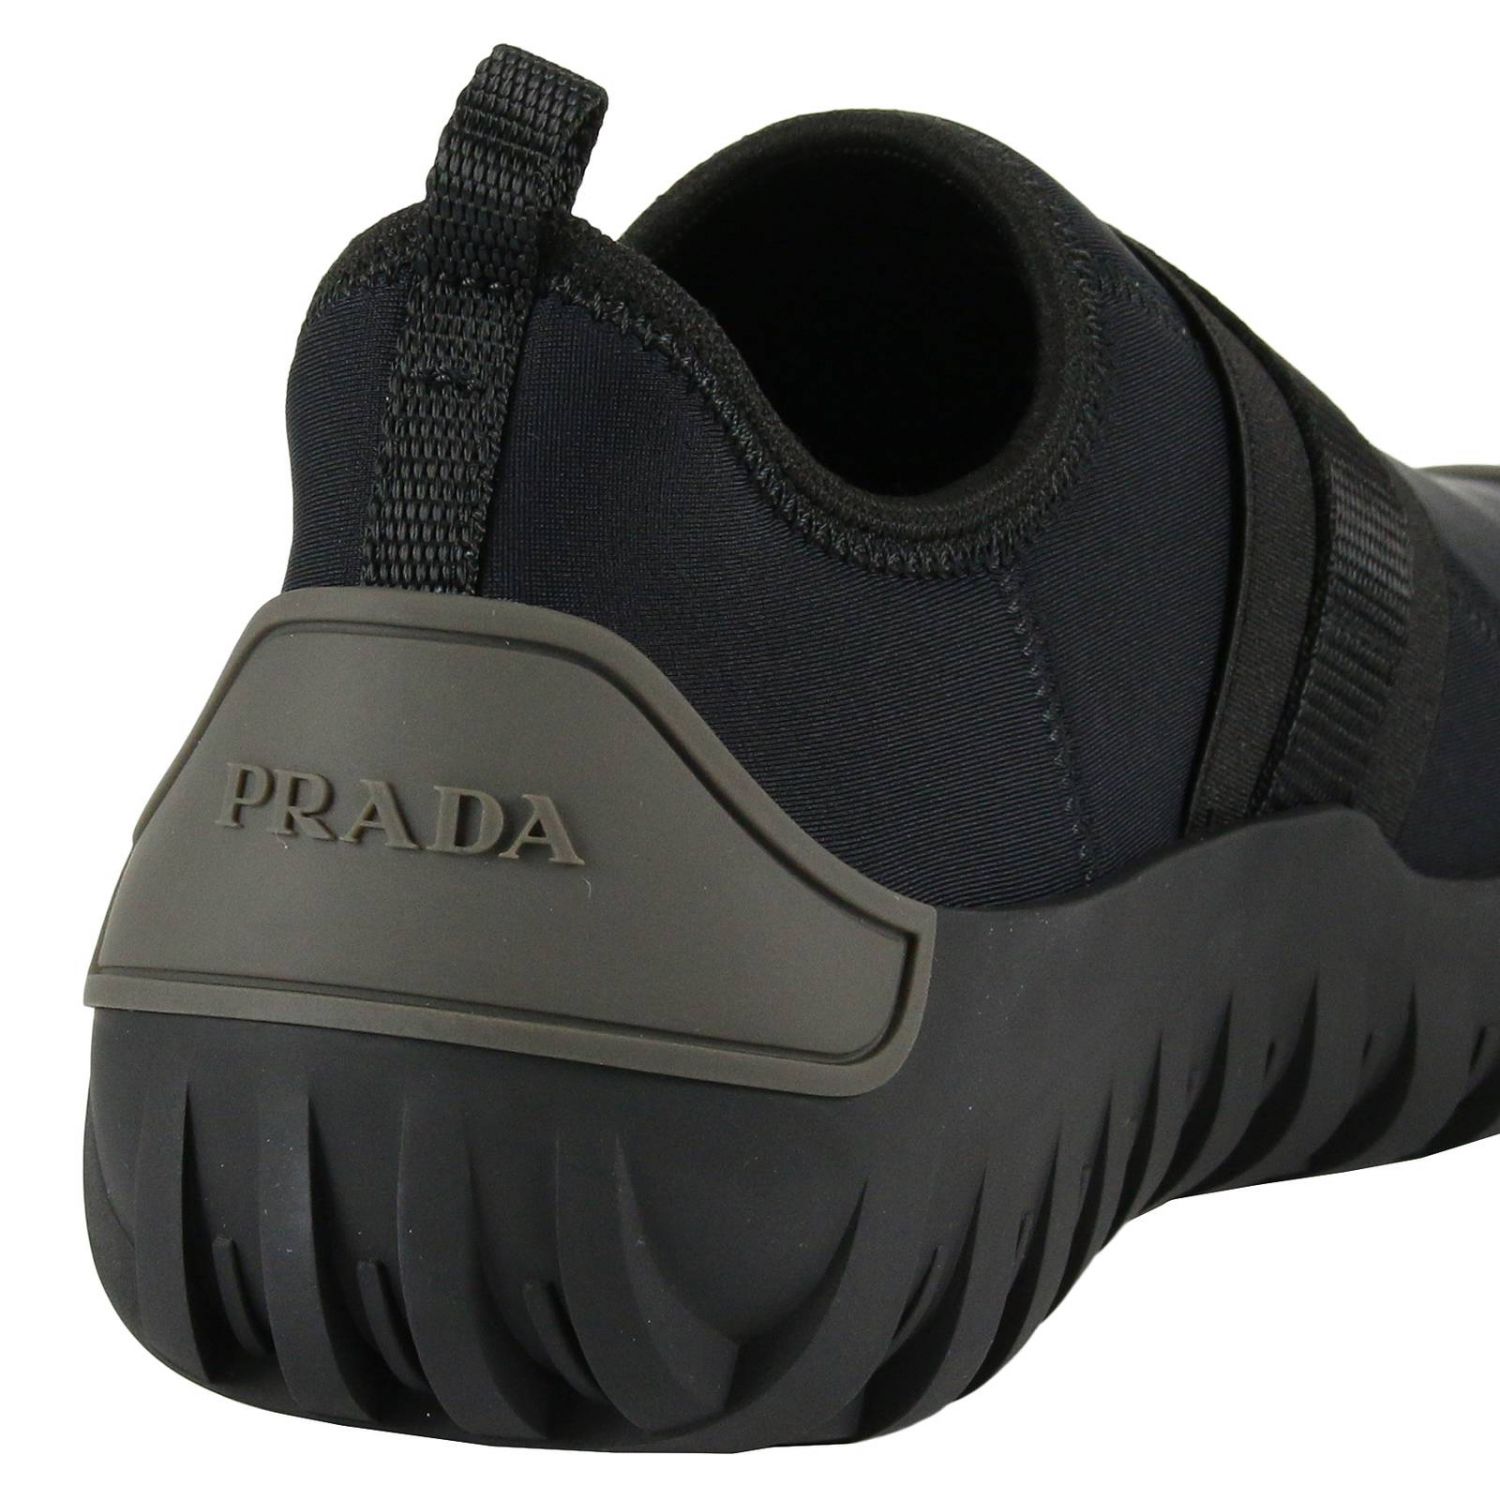 prada water shoes